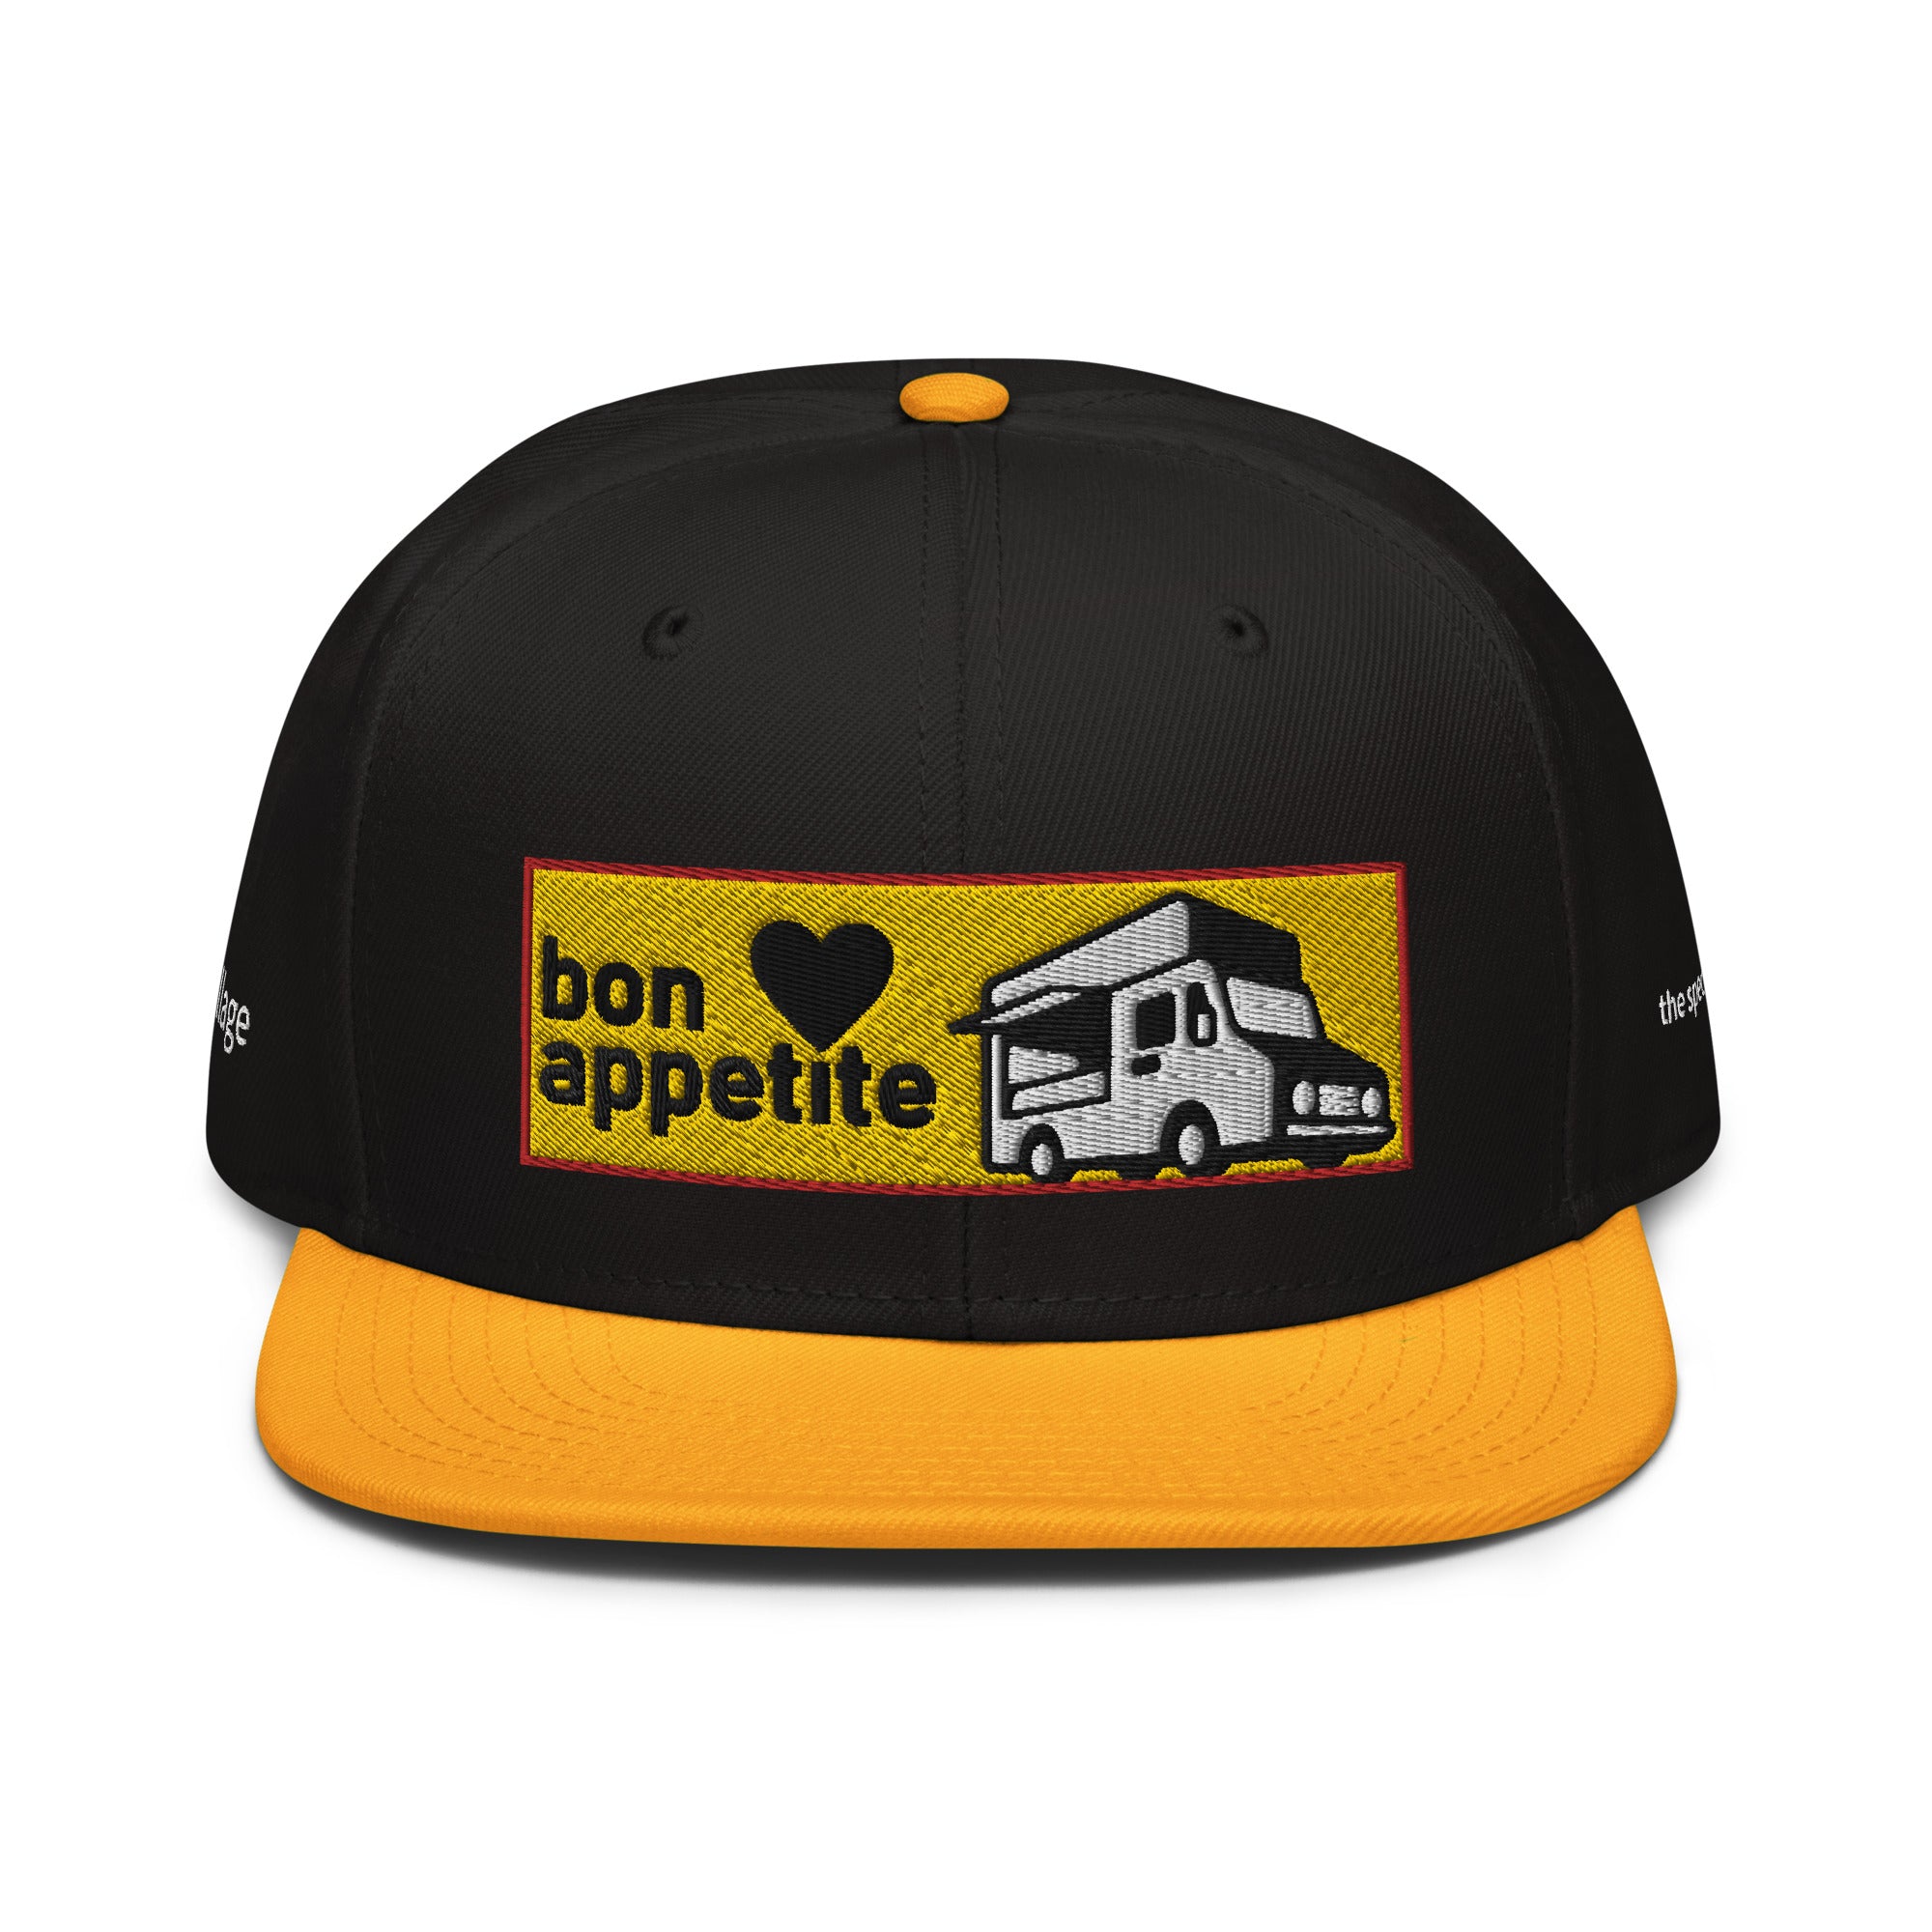 Snapback Cap [Bon appetit2] Gold / Black / Black